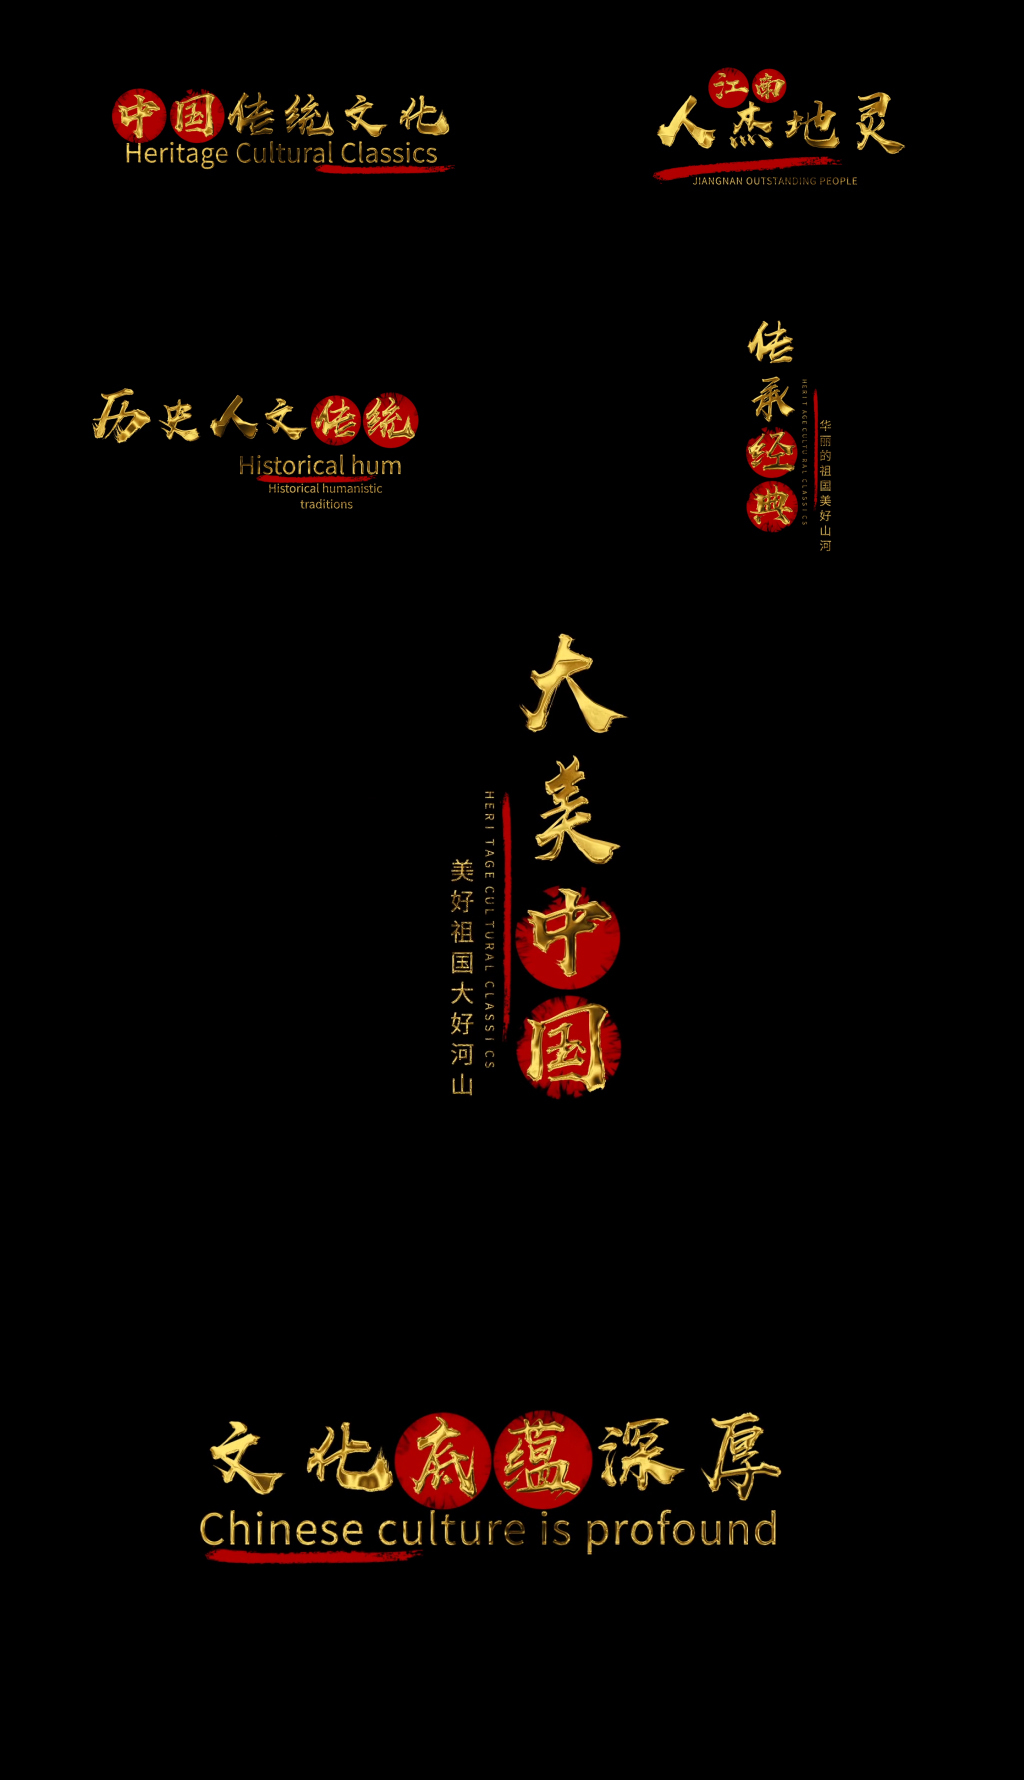 9款黄金水墨中国风文字字幕AE模板